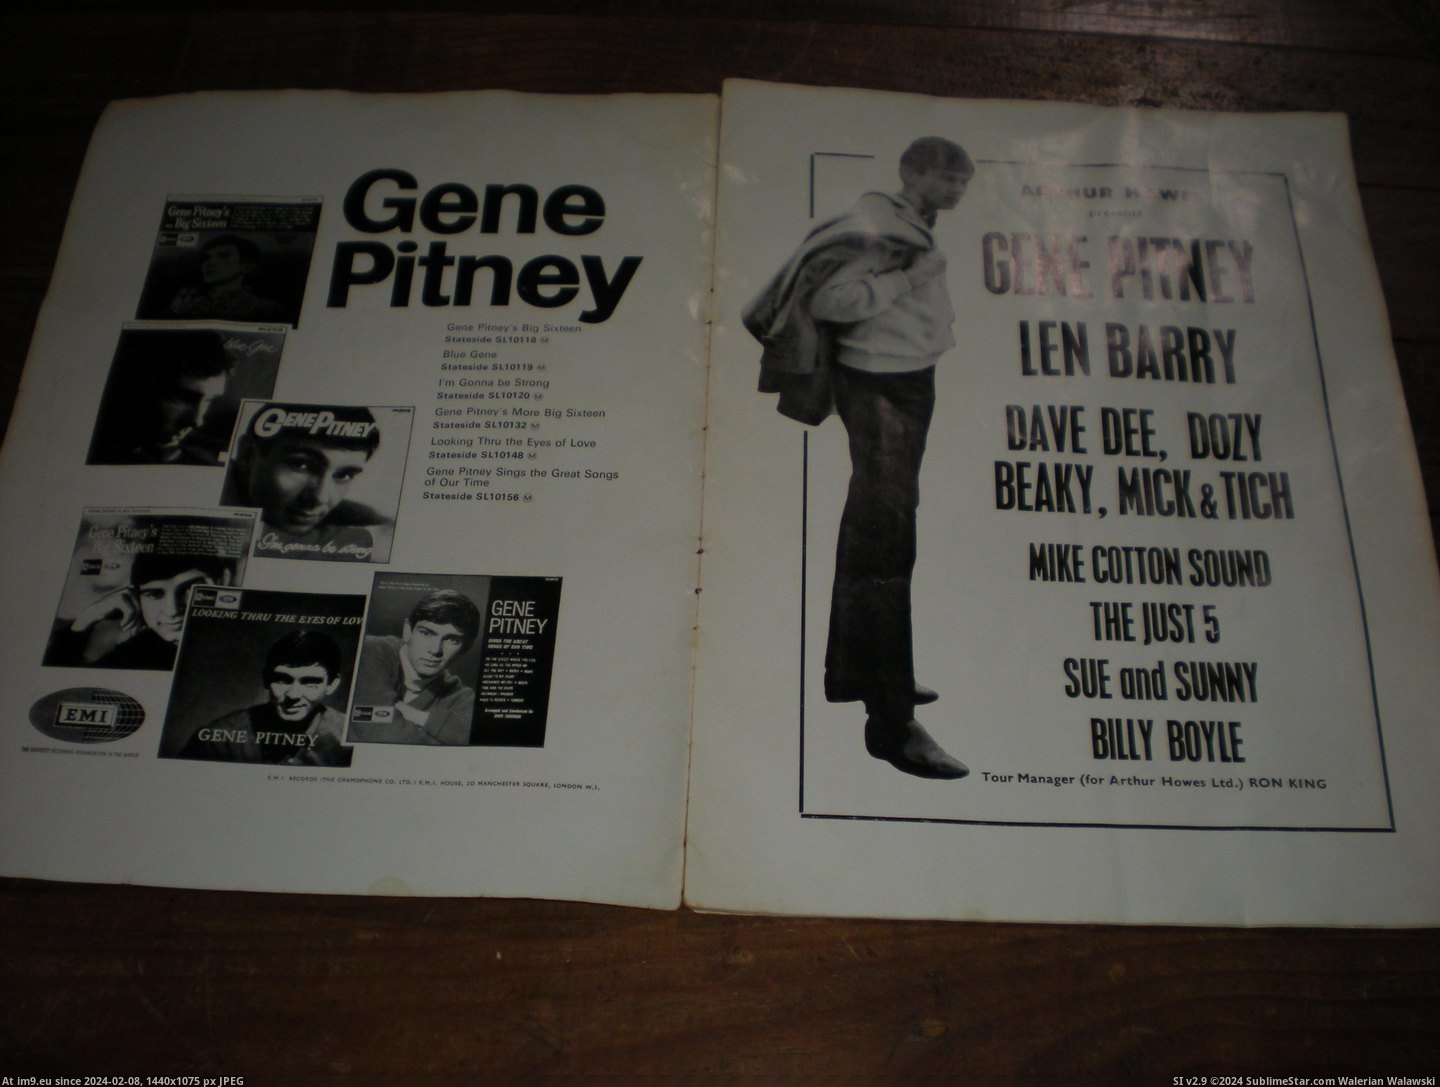 #Gene #Pitney #Prog Gene Pitney prog 3 Pic. (Bild von album new 1))